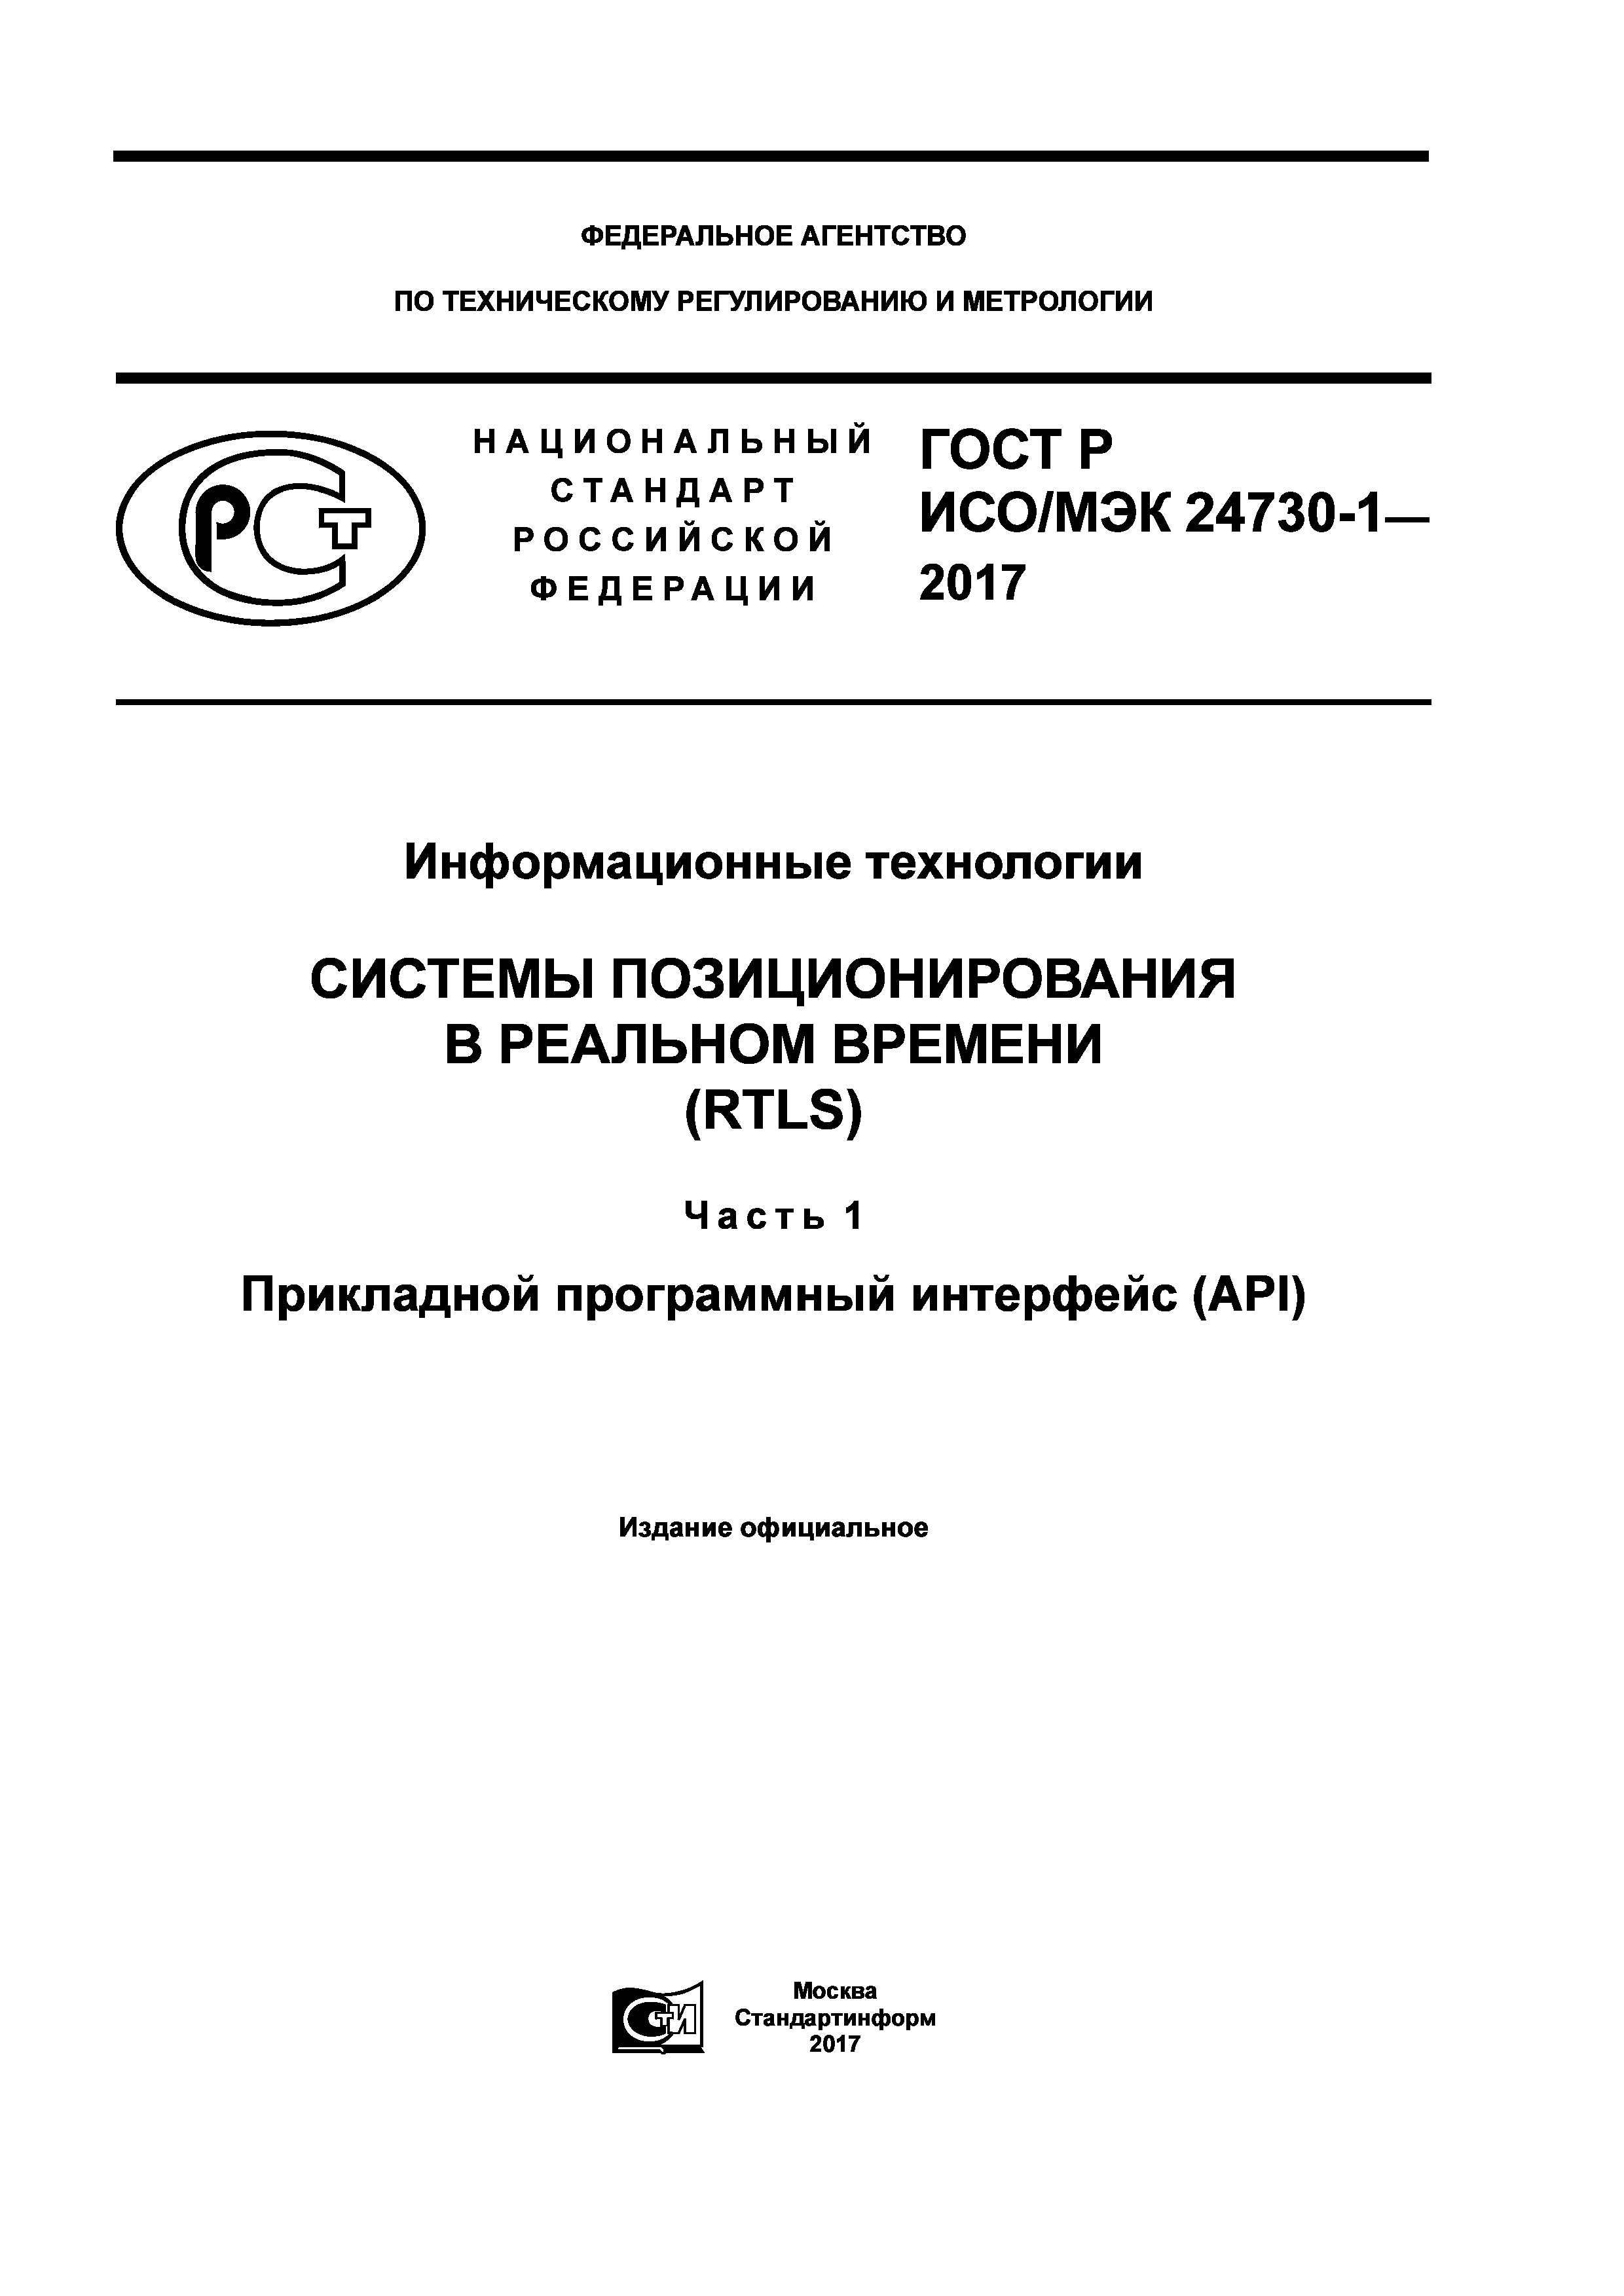 ГОСТ Р ИСО/МЭК 24730-1-2017